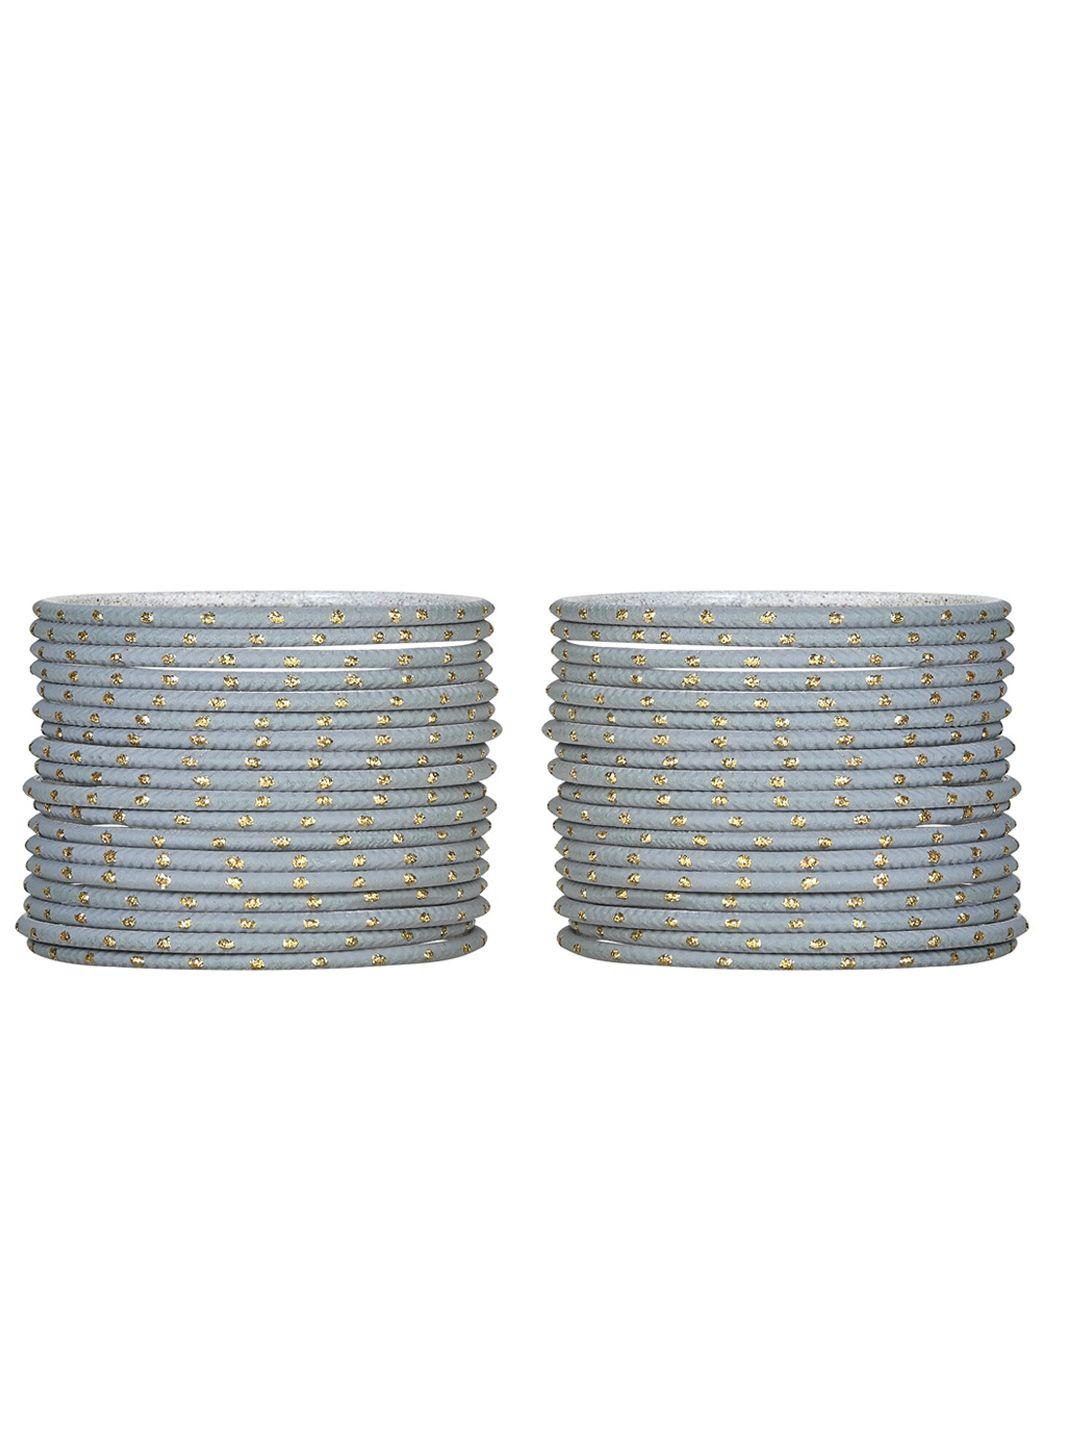 arendelle girls set of 48 grey metal bangles